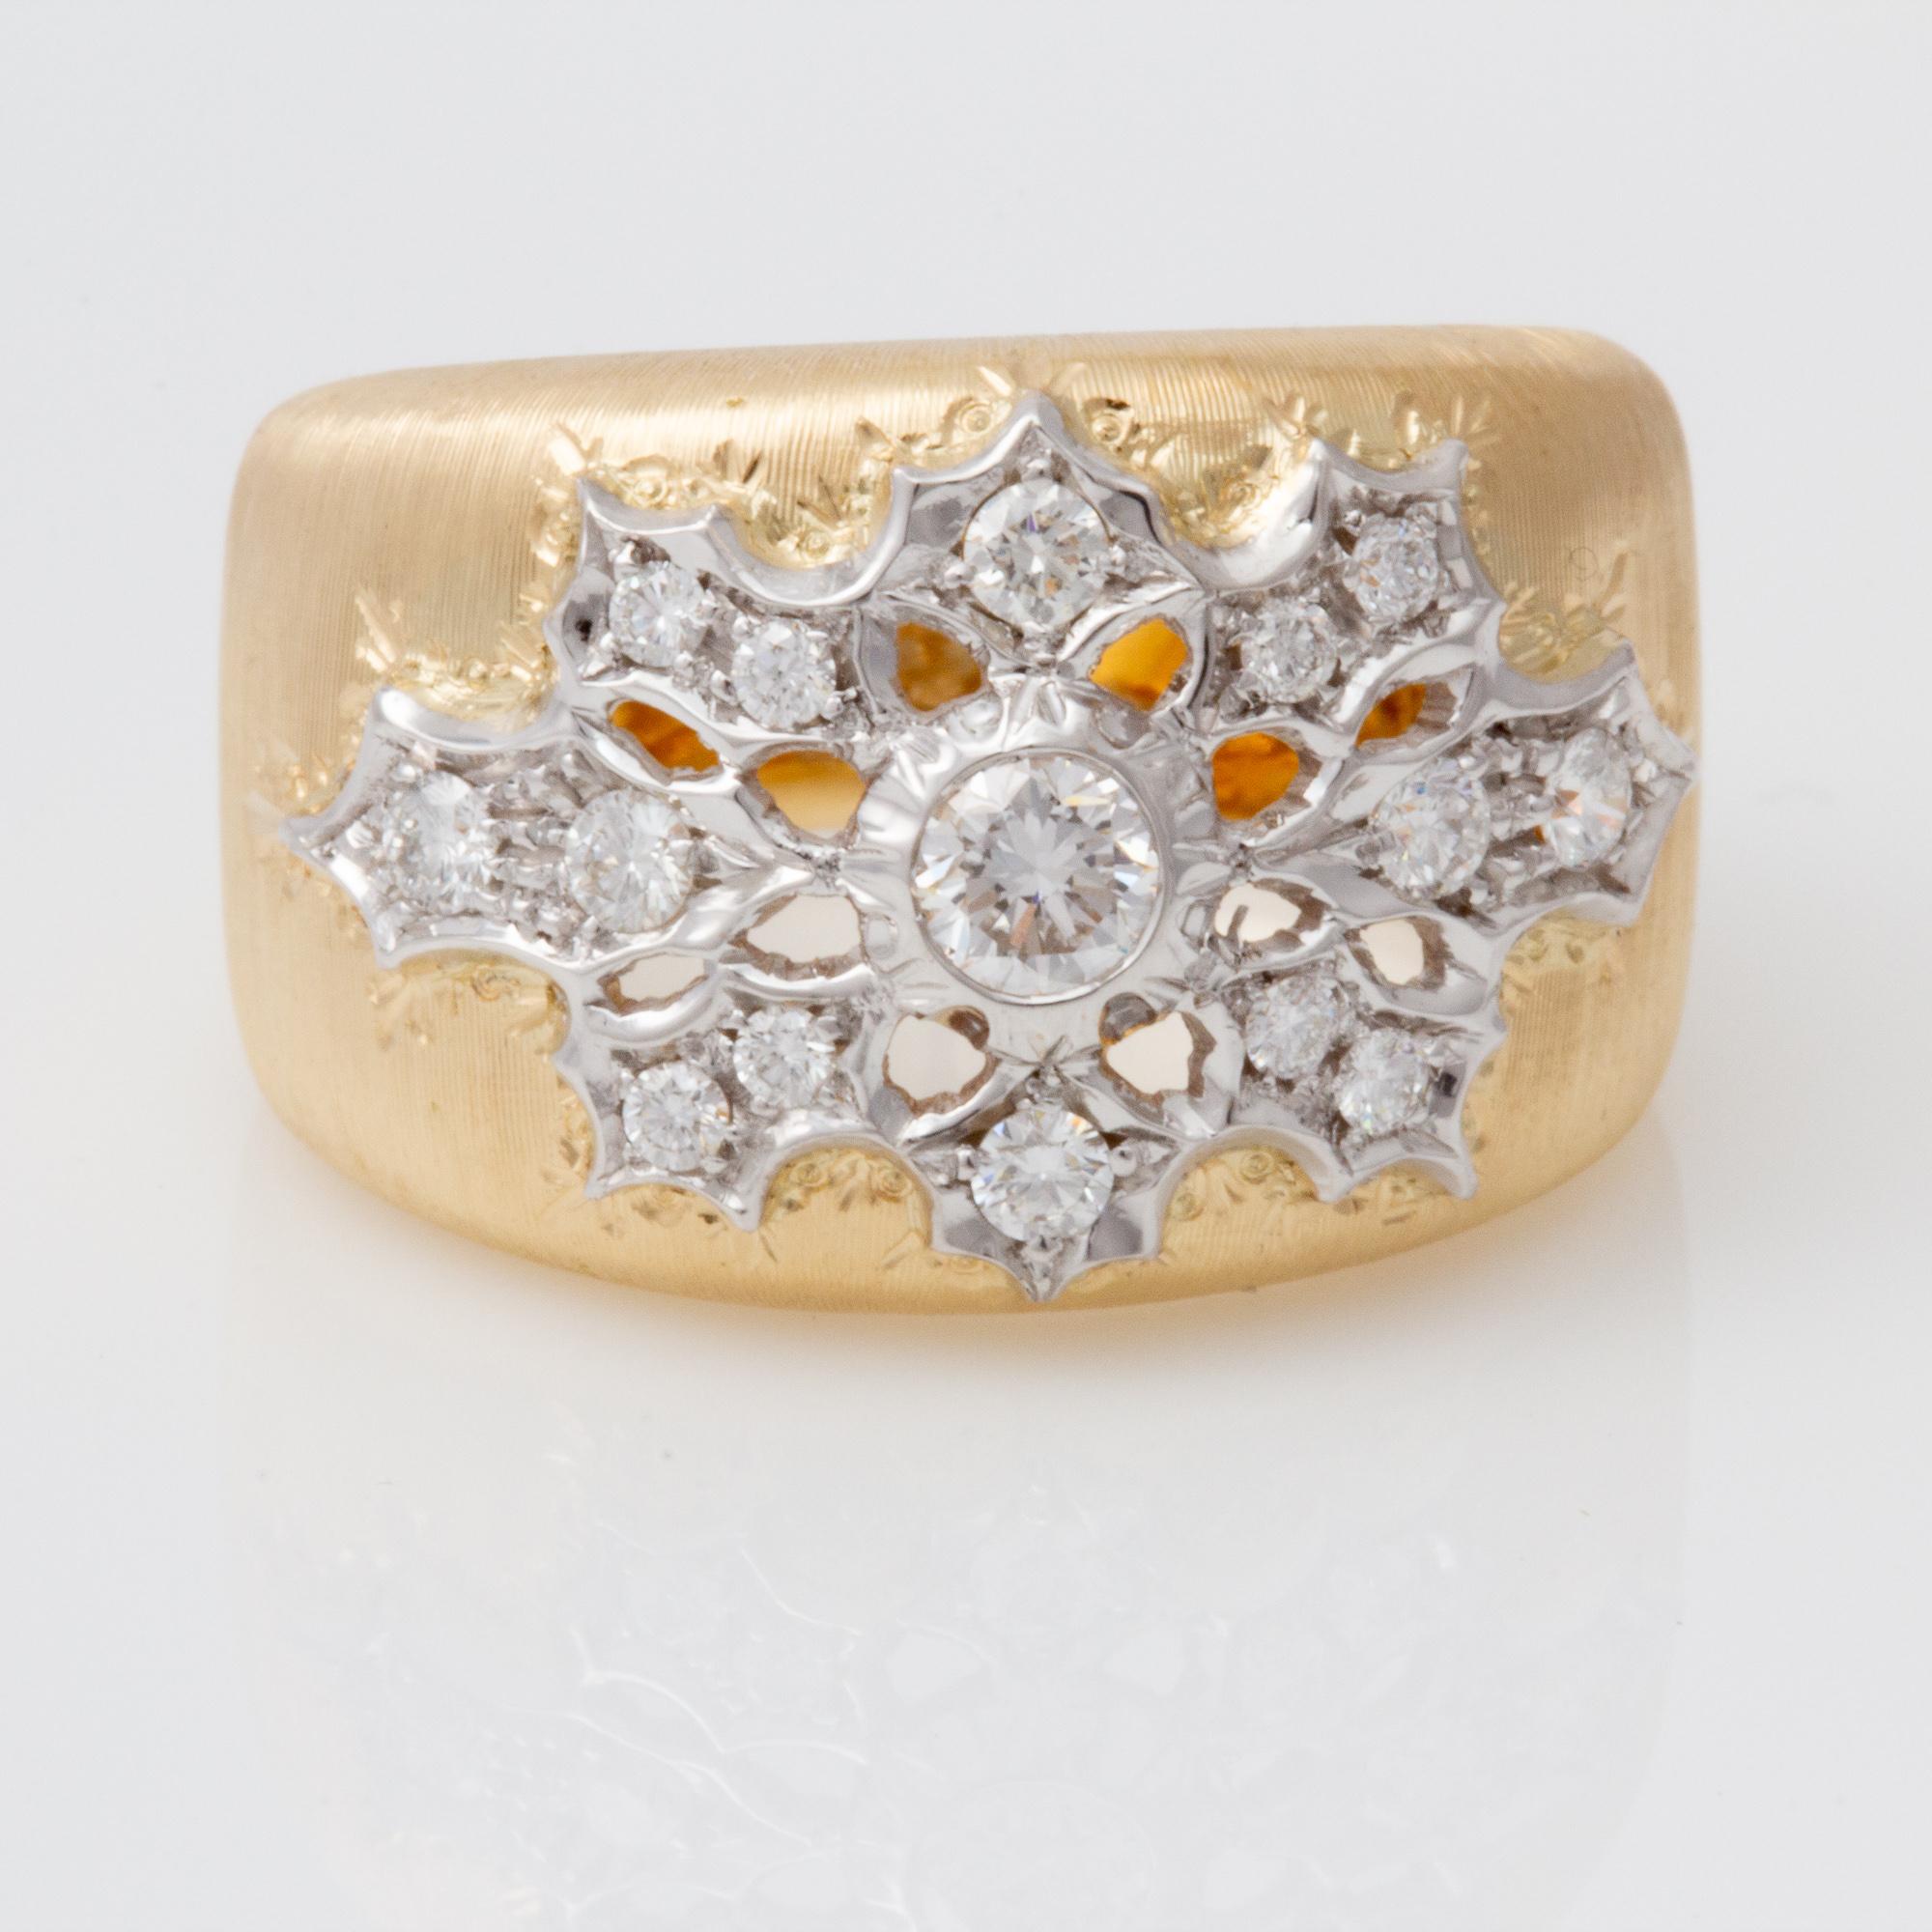 Dieser exquisite, in Italien handgefertigte Diamantring im florentinischen Stil der alten Welt ist in zweifarbiges 18-karätiges Gold gefasst und ist wirklich erstaunlich. 
Erstellt in  in einem kleinen familiengeführten Atelier in Florenz, Italien,